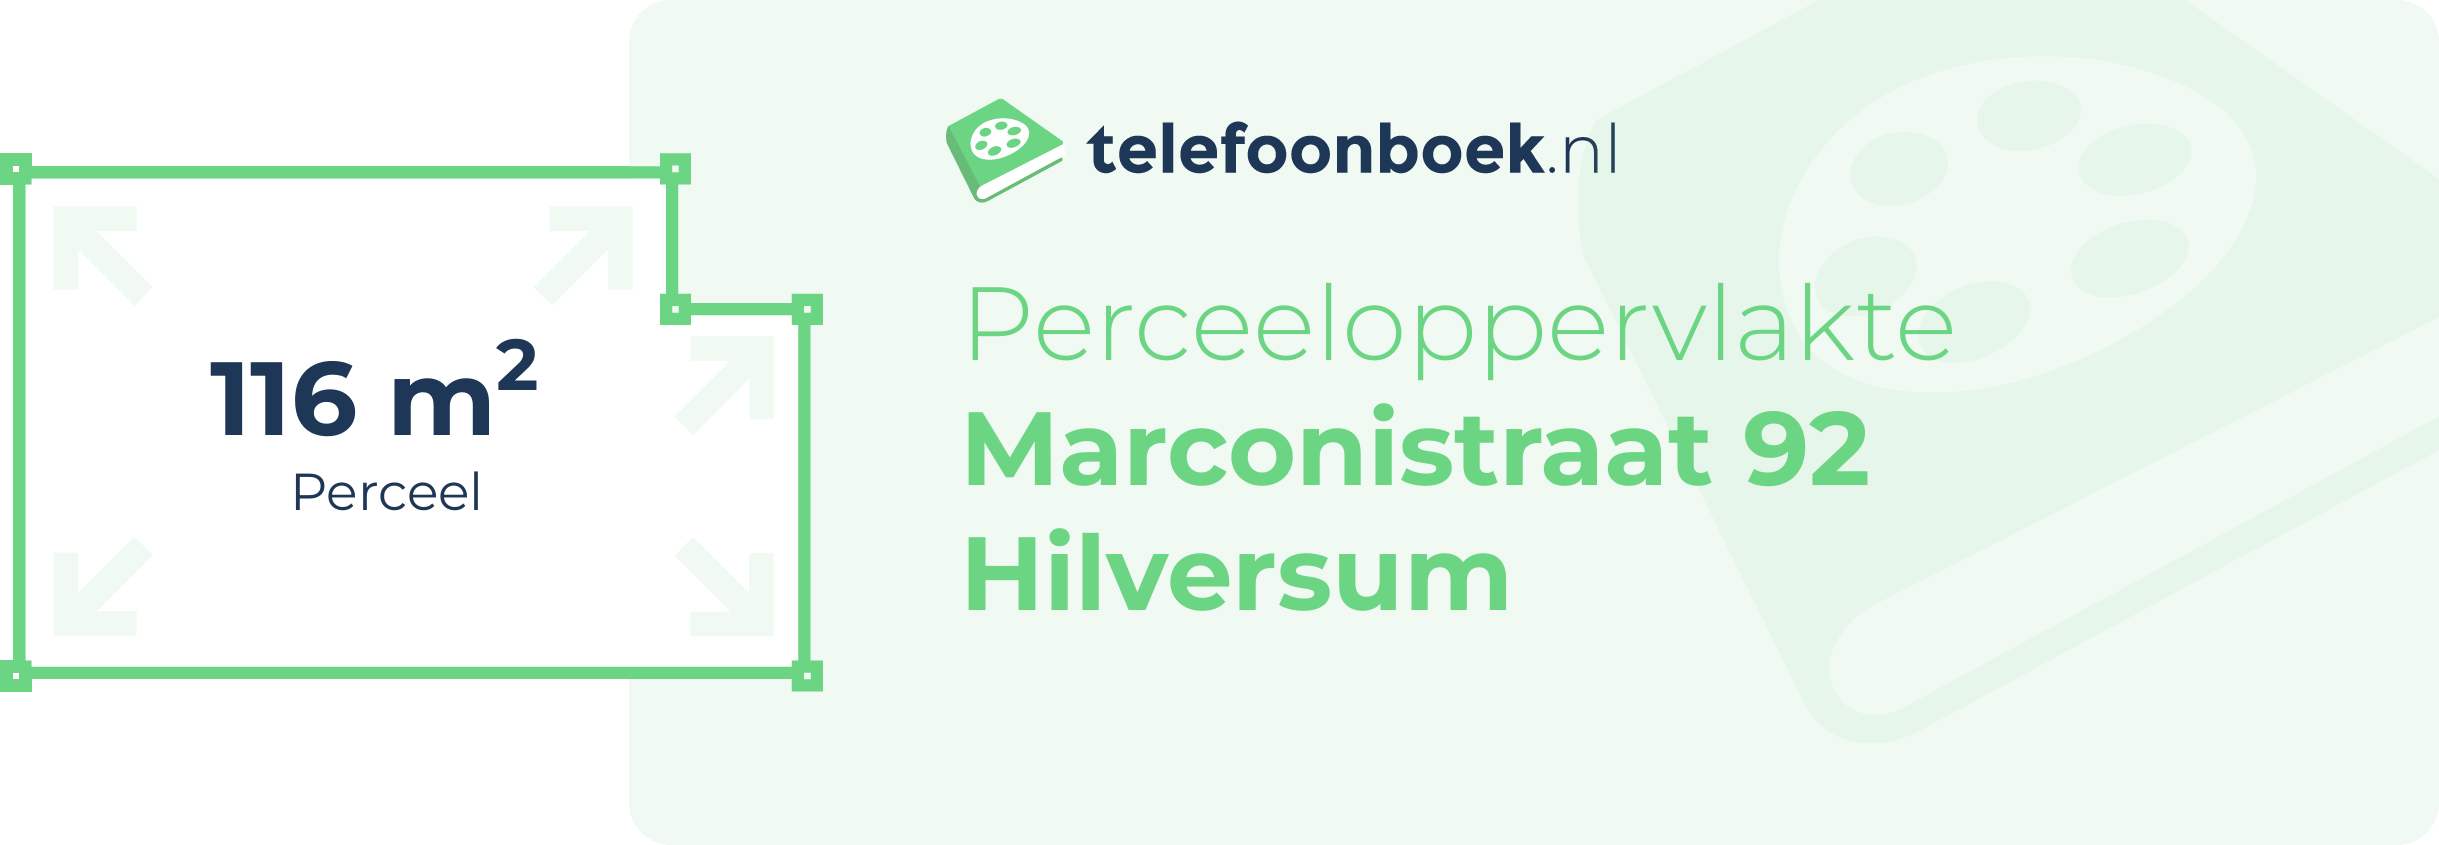 Perceeloppervlakte Marconistraat 92 Hilversum